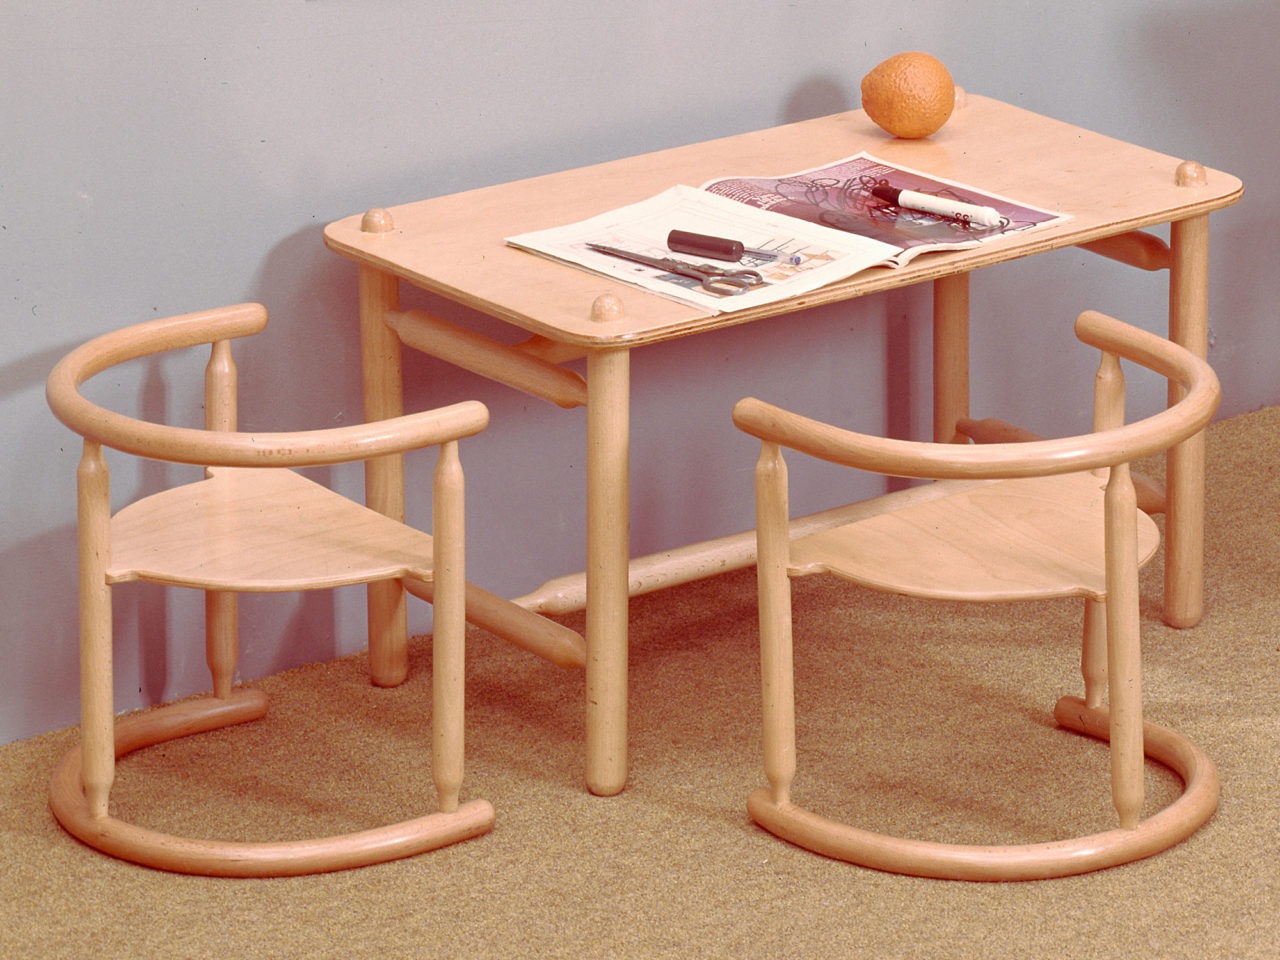 Tisch und zwei Stühle in Kindergröße, komplett aus hellem Holz. Korpus und Details mit weichen, runden Formen.